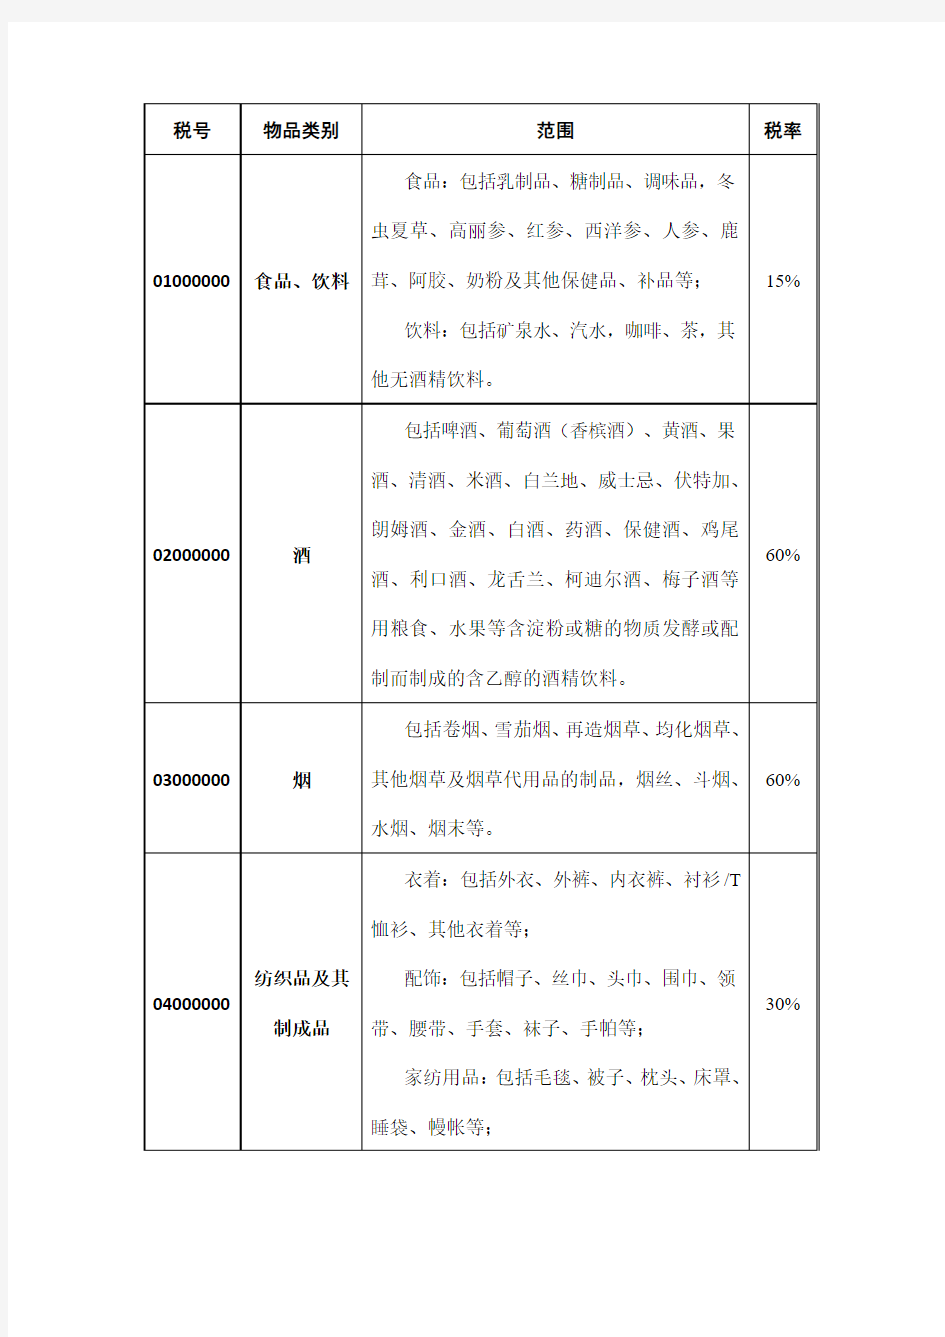 中华人民共和国进境物品完税价格表、中华人民共和国进境物品归类表